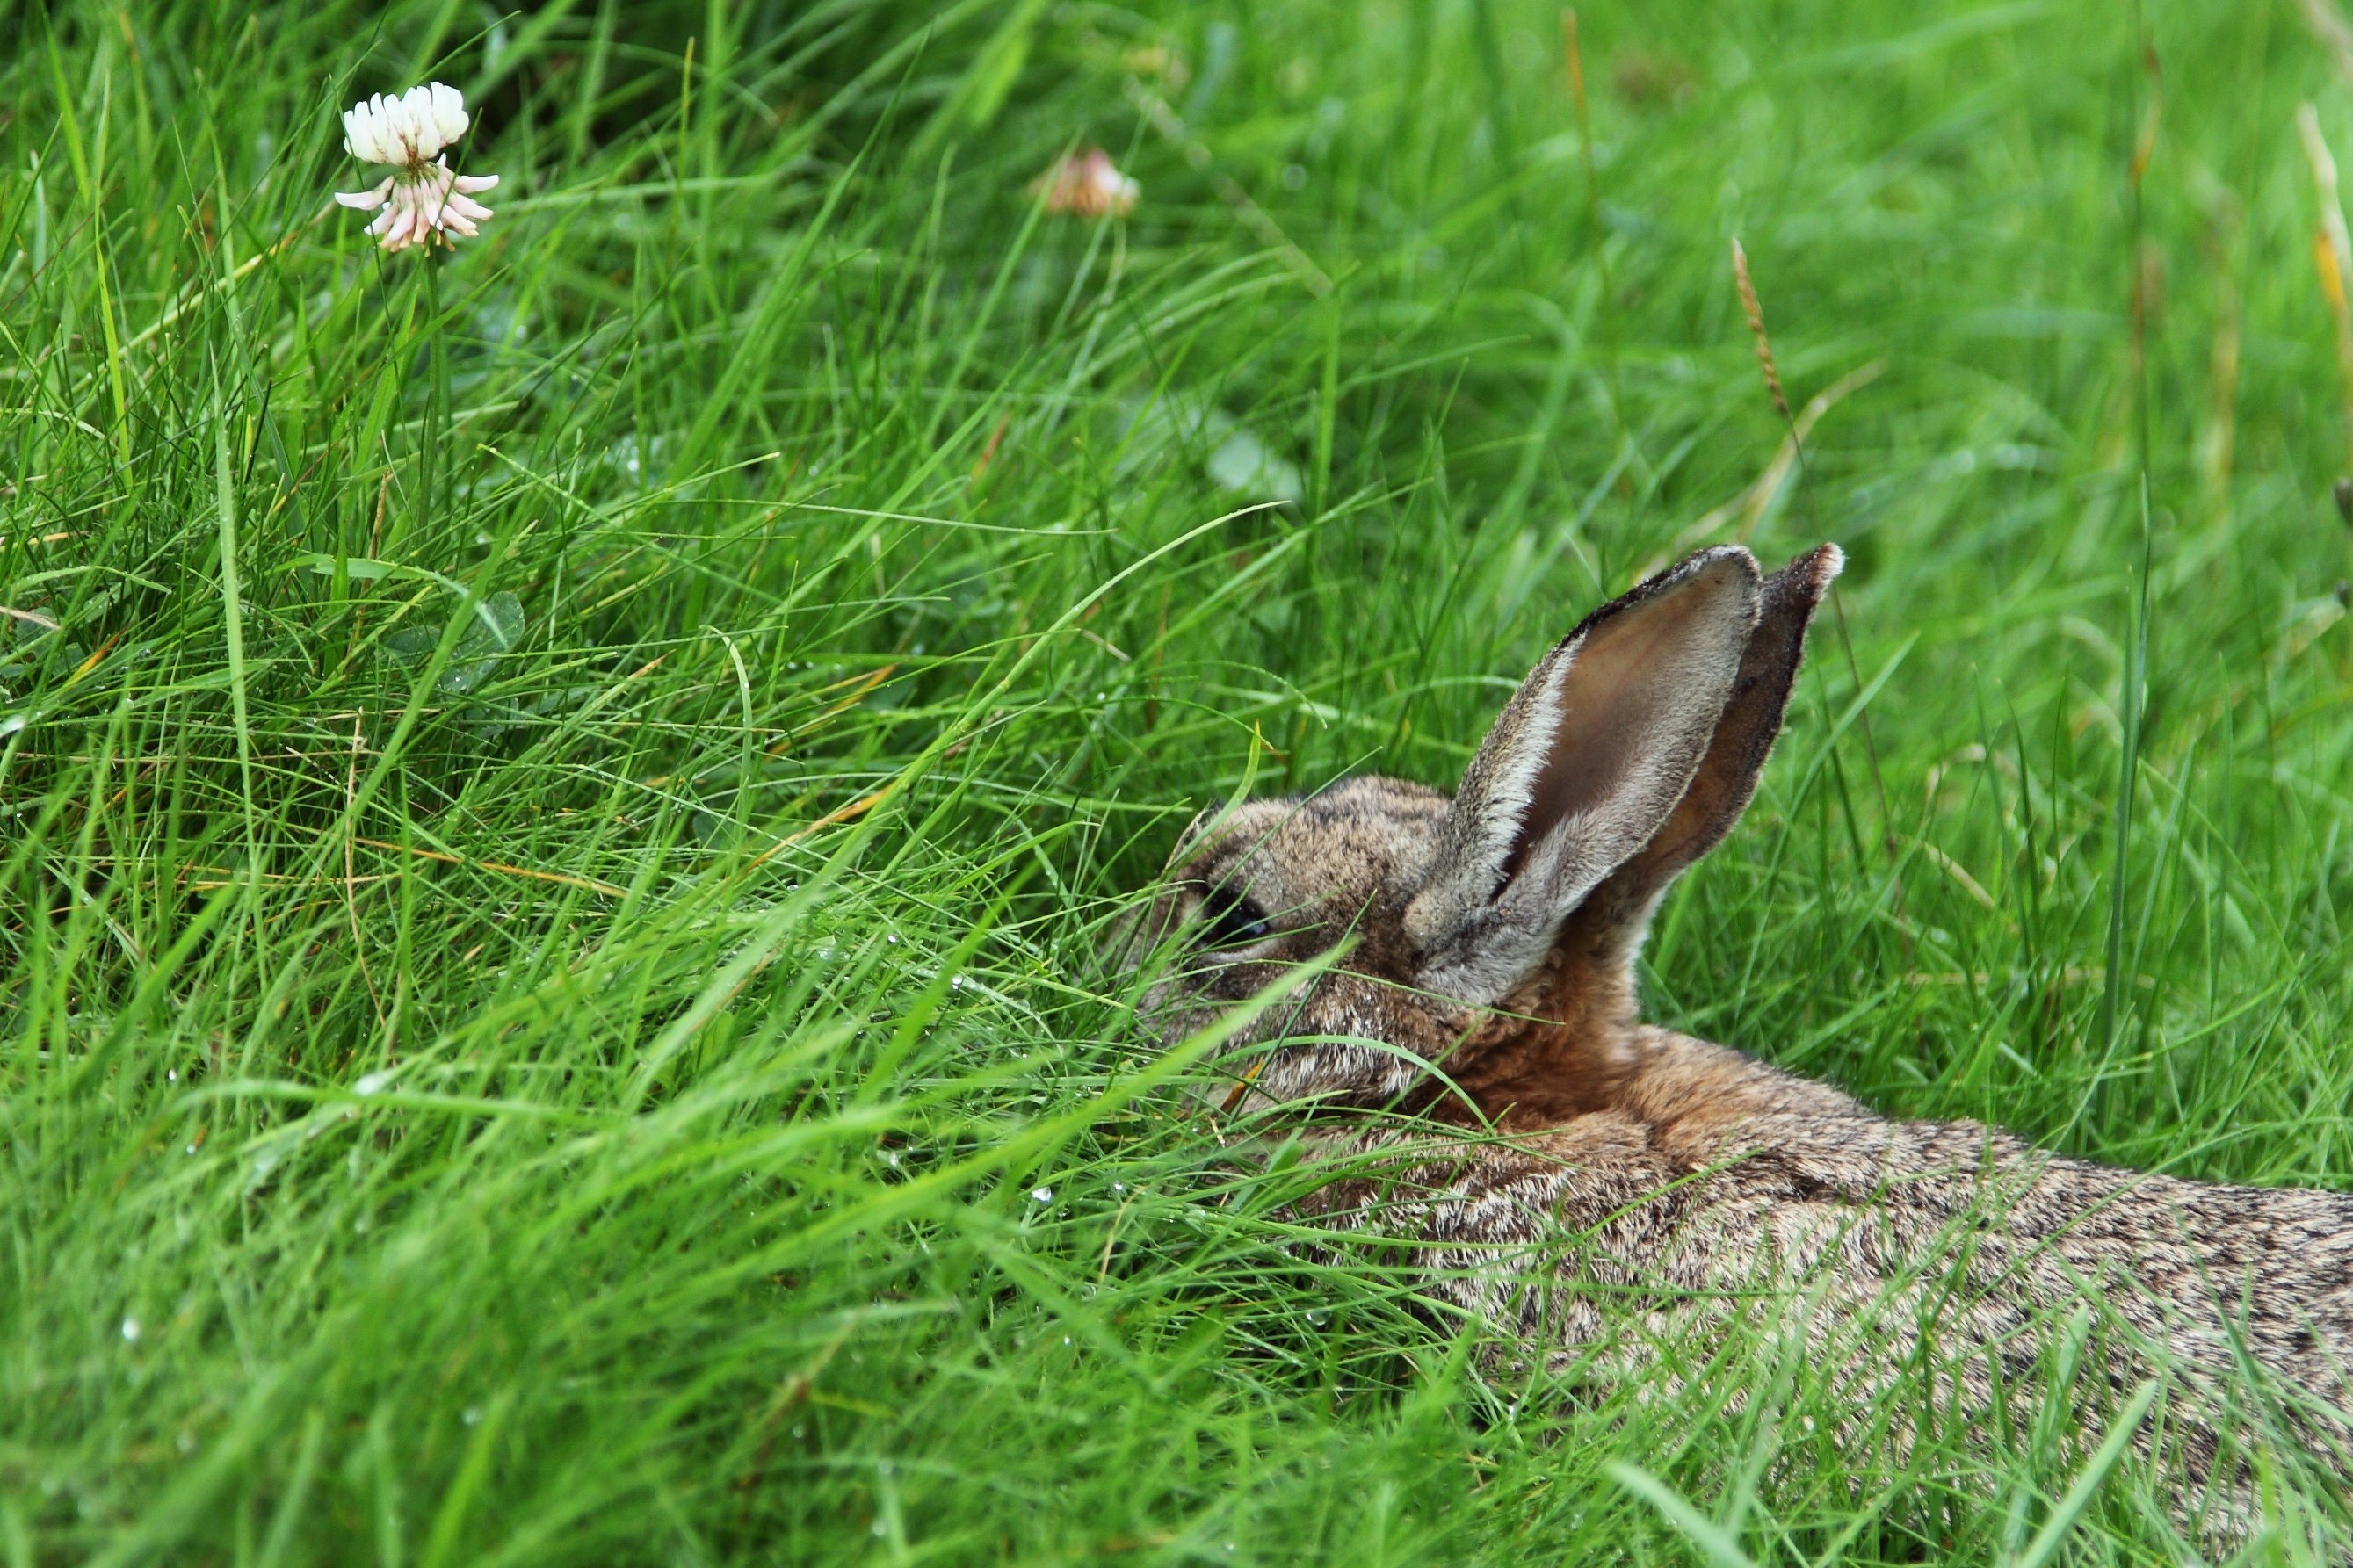 У зайца русака глаза коричневые. Заяц в лесу. Зайчонок в траве. Кролик в траве. Заяц Лесной.